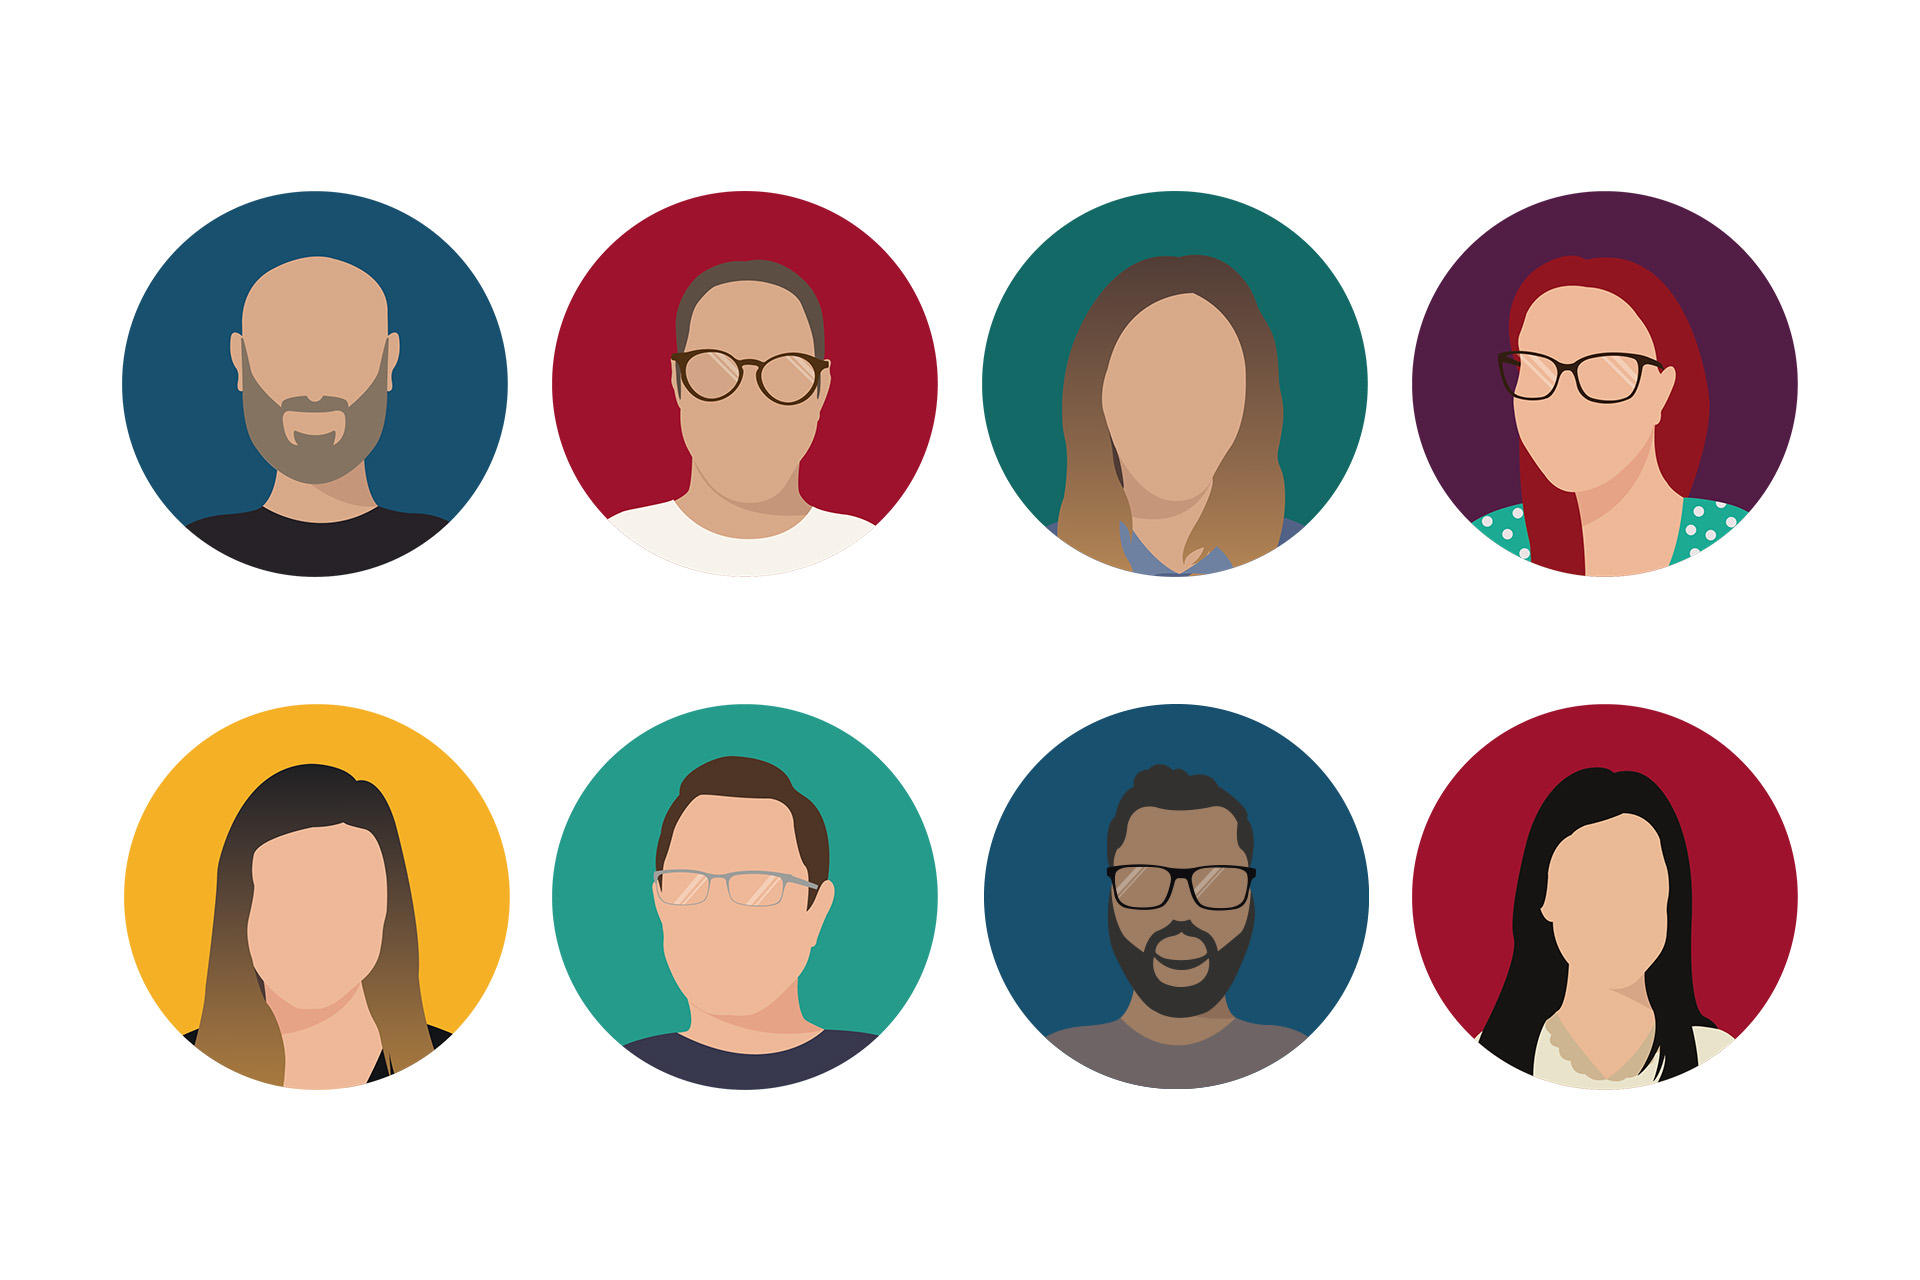 ICAB team profile avatars - custom illustration design